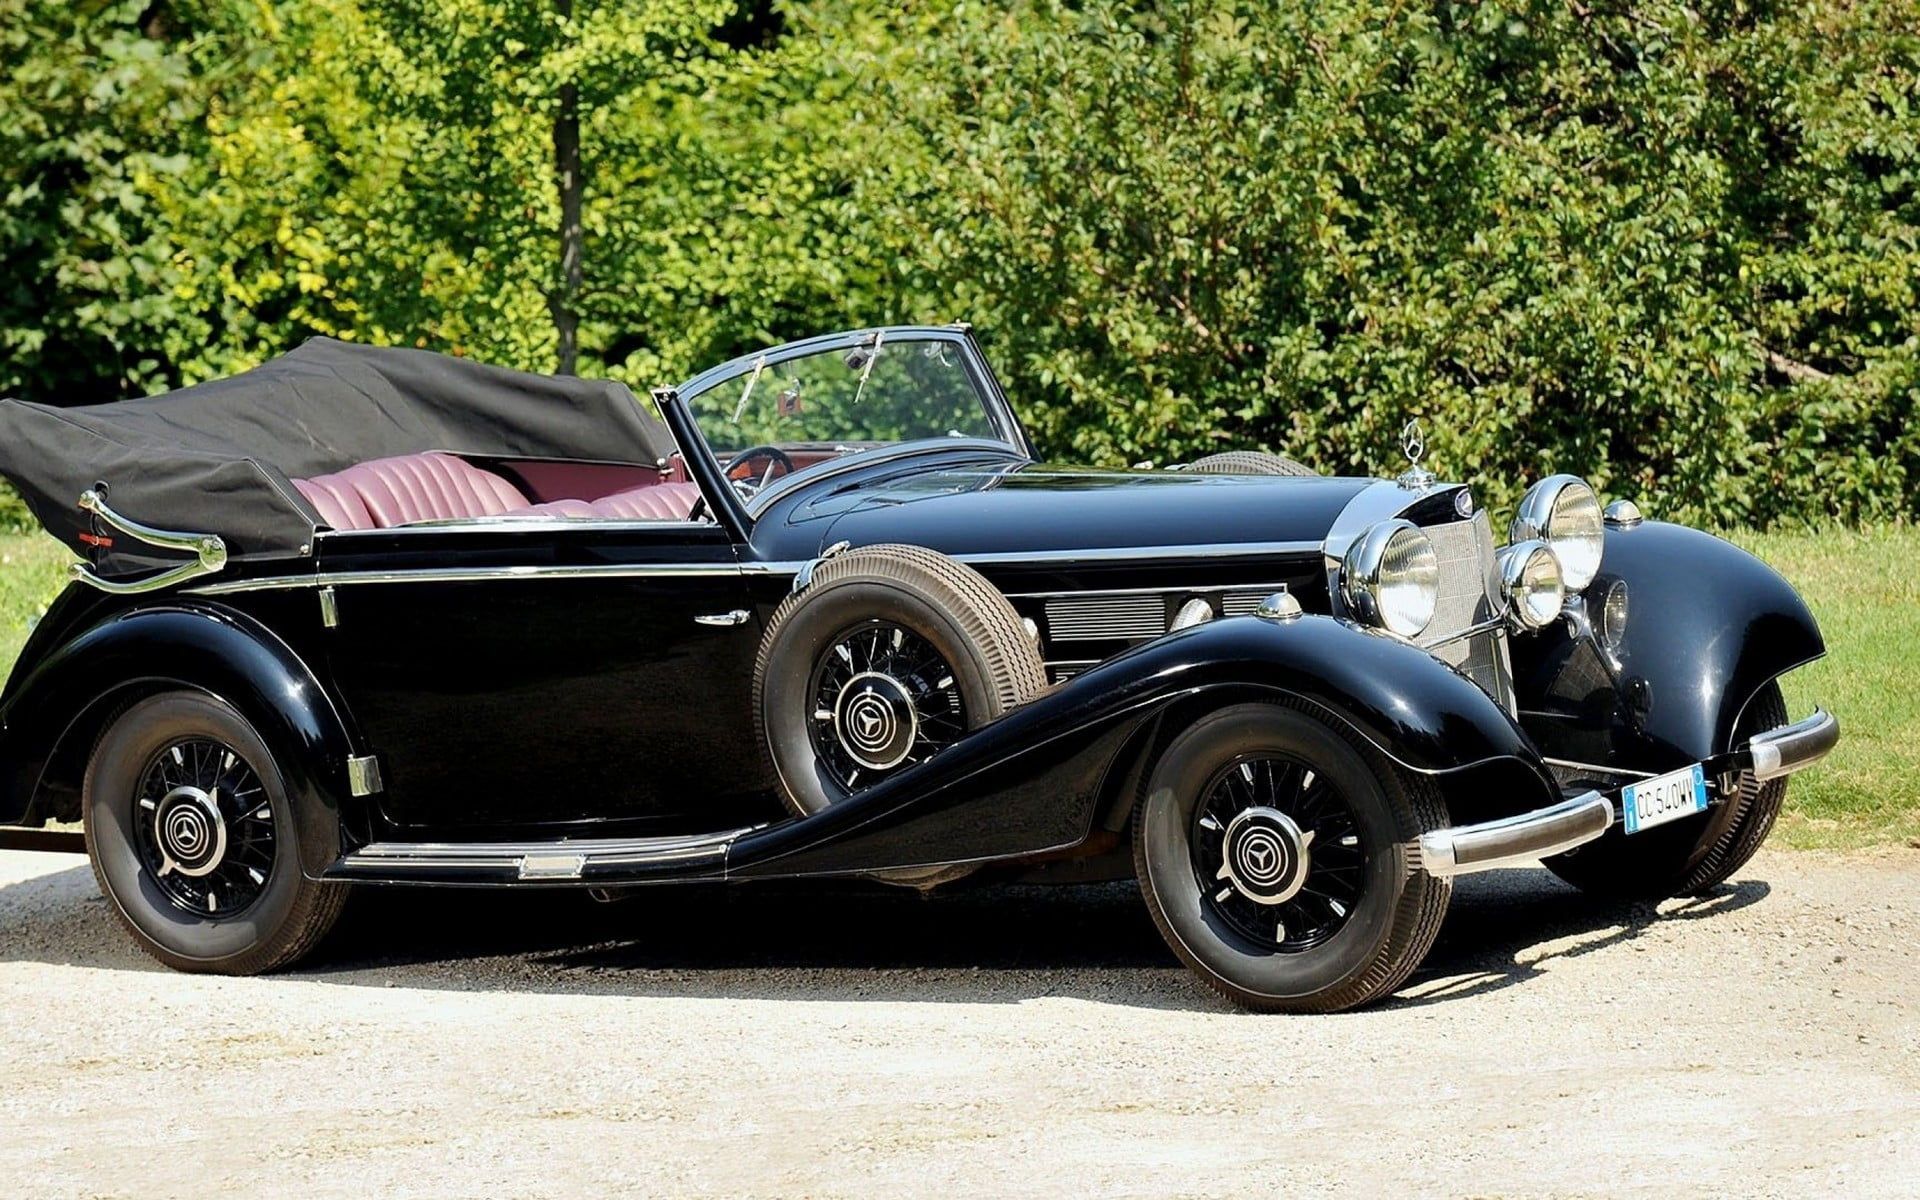 Classic Black Convertible Coupe, Mercedes Benz, Car, Vintage